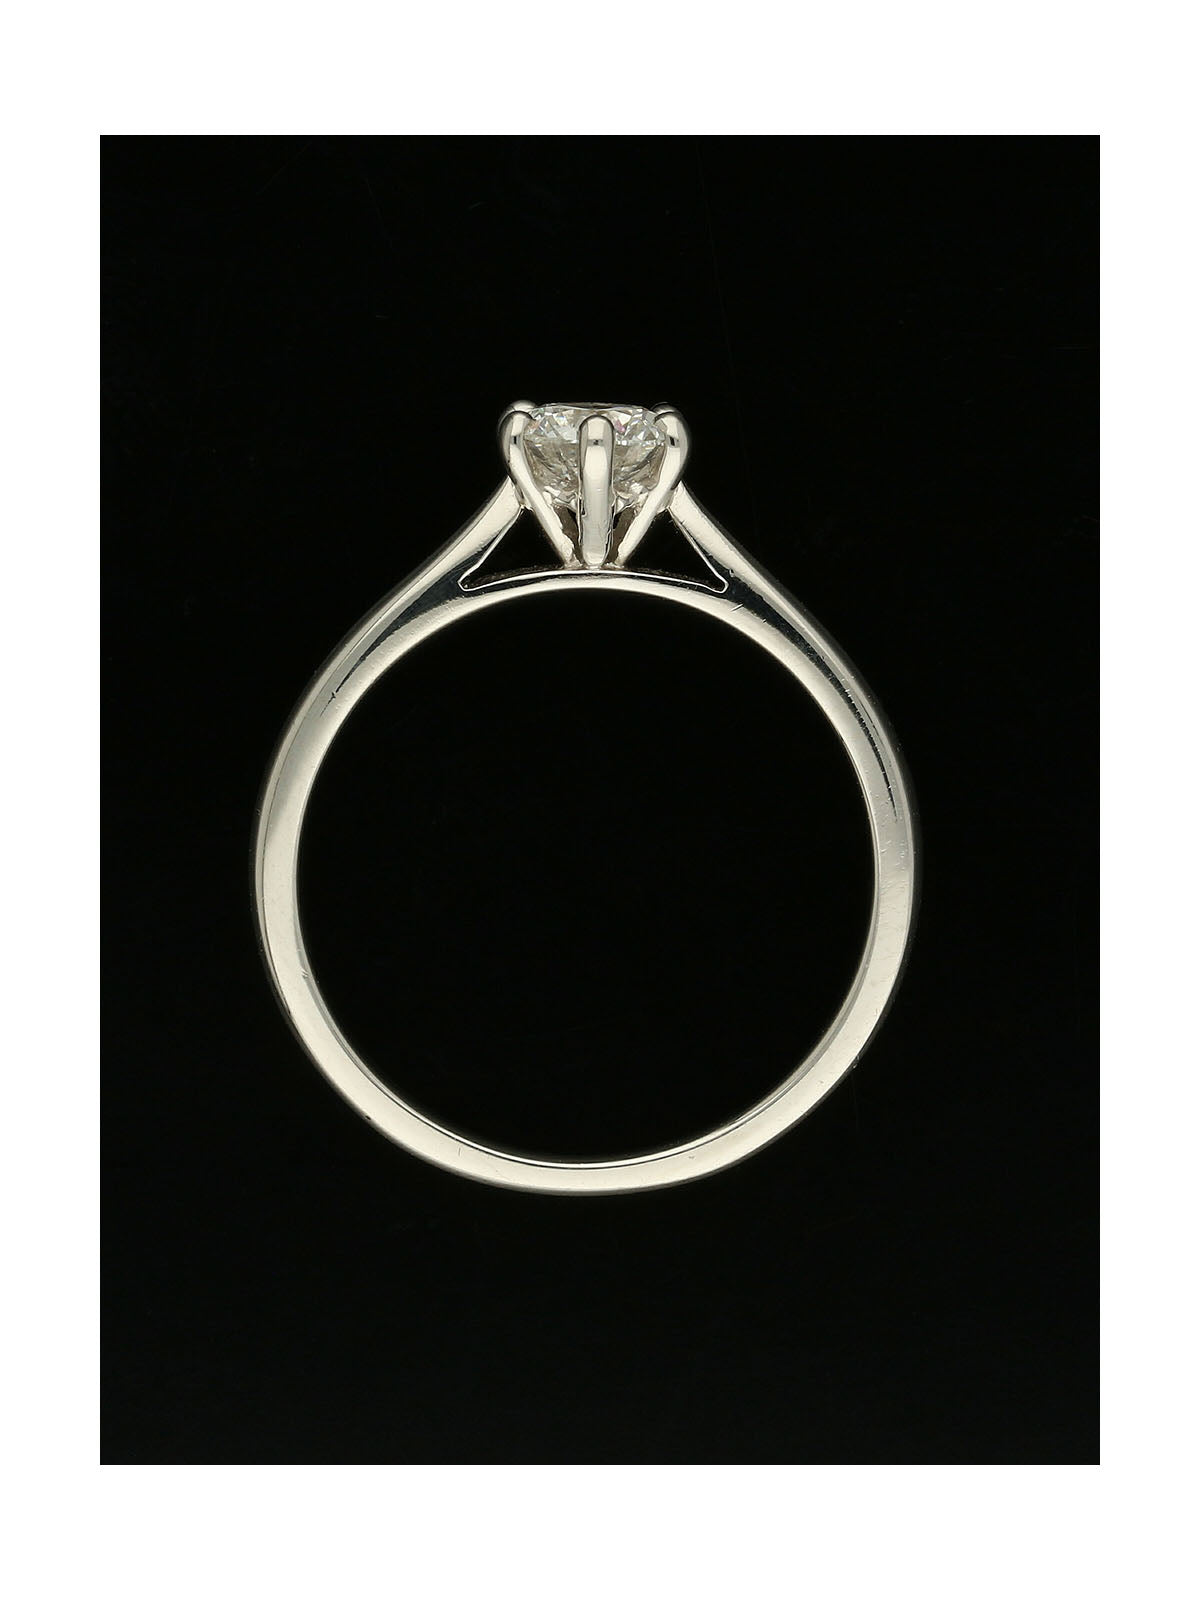 Pre Owned Diamond Round Brilliant Solitaire Ring 0.50ct in Platinum